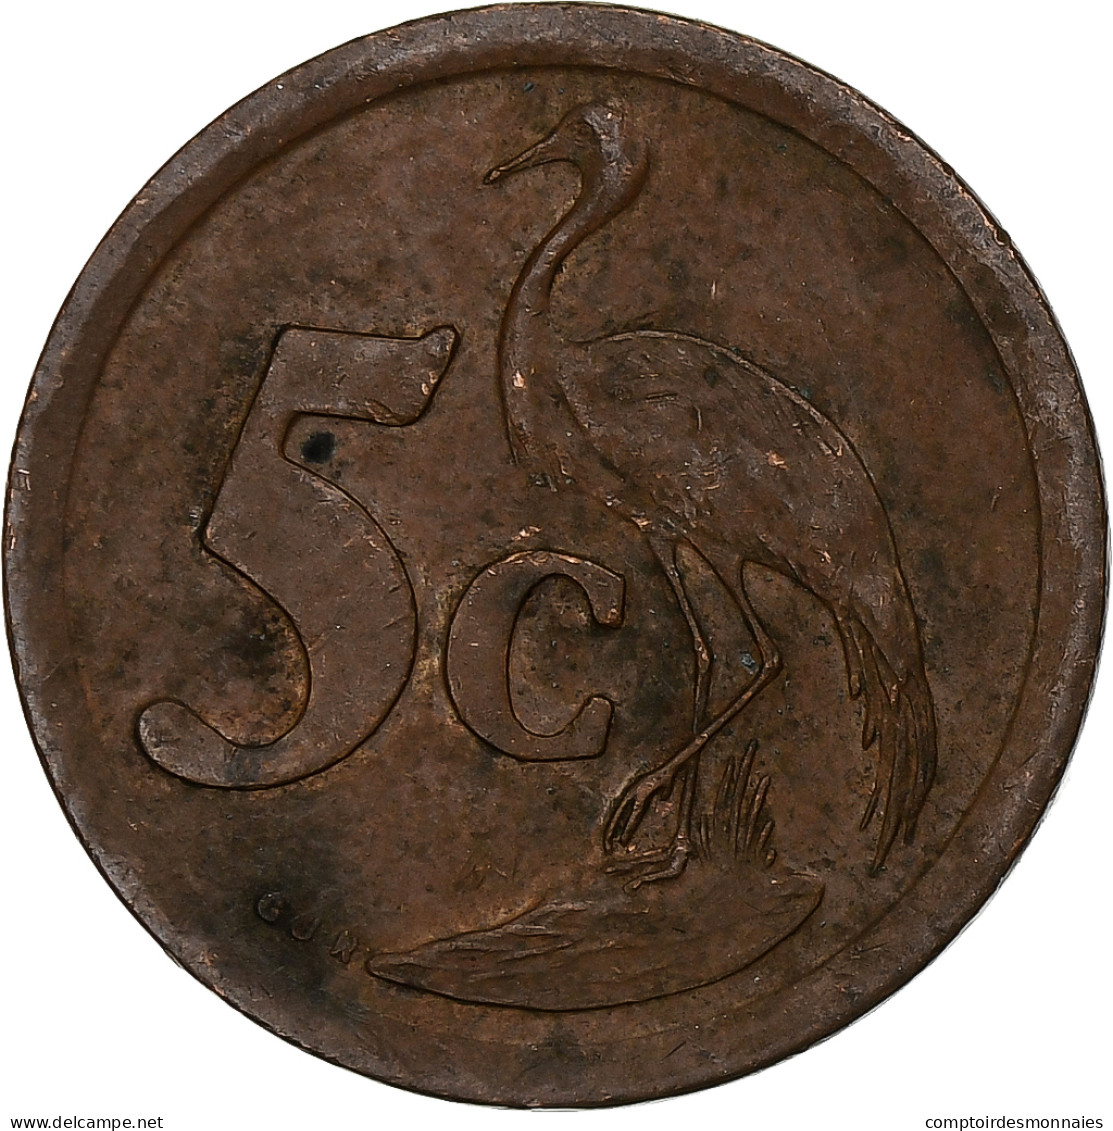 Afrique Du Sud, 5 Cents, 1994 - Sud Africa